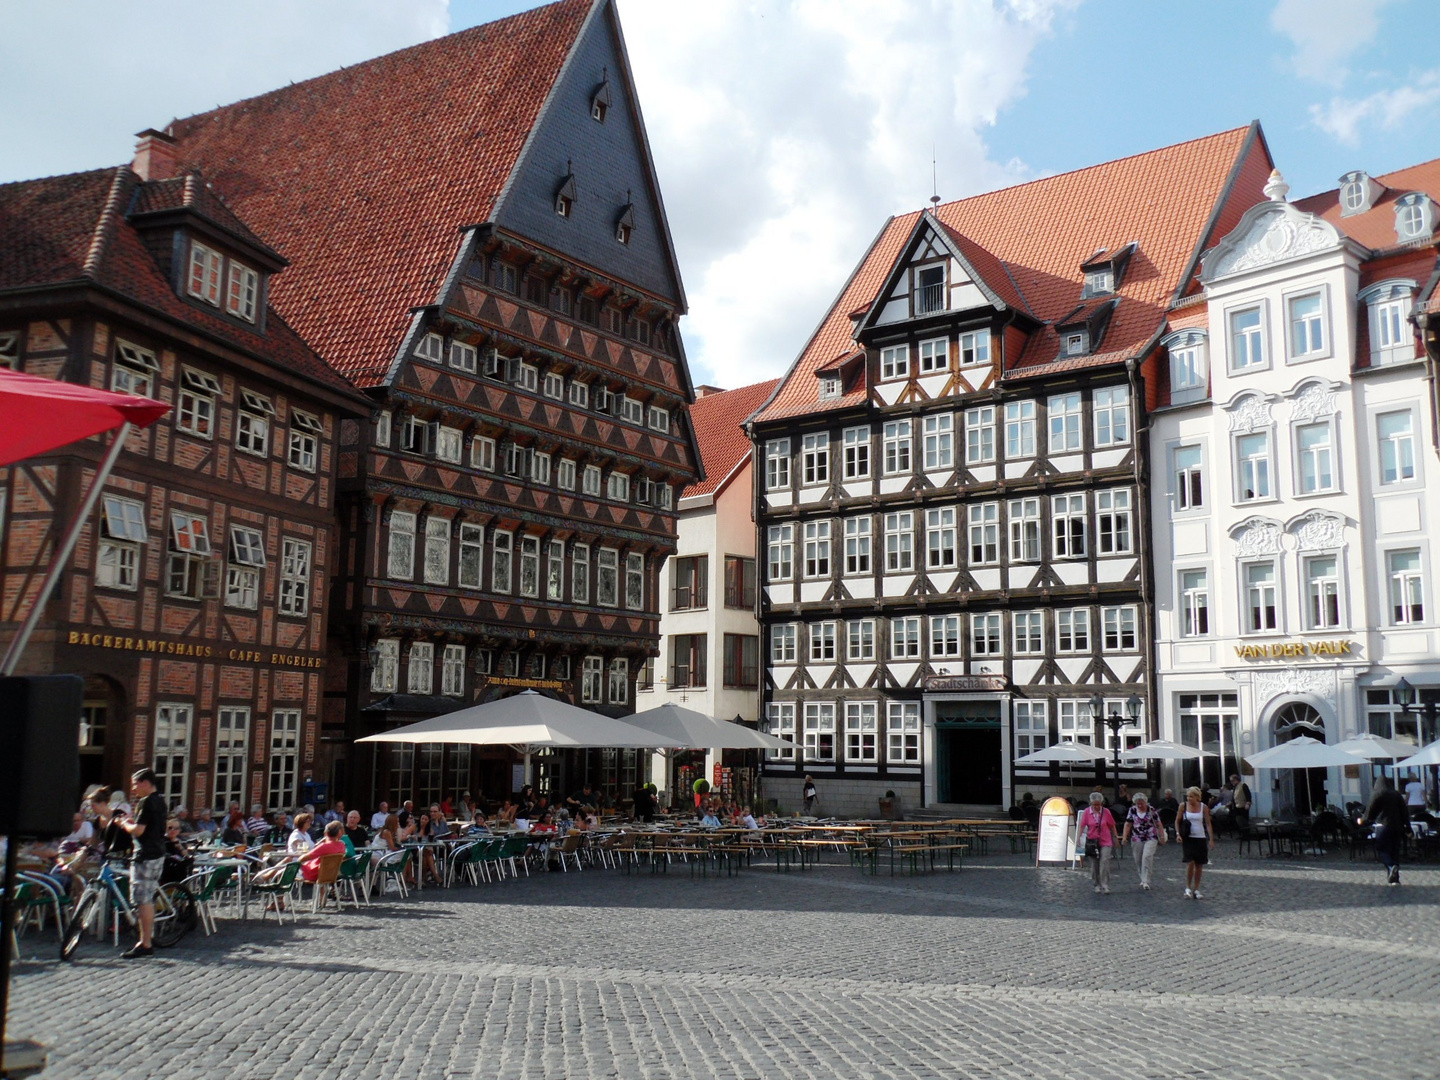 Hildesheimer Marktplatz